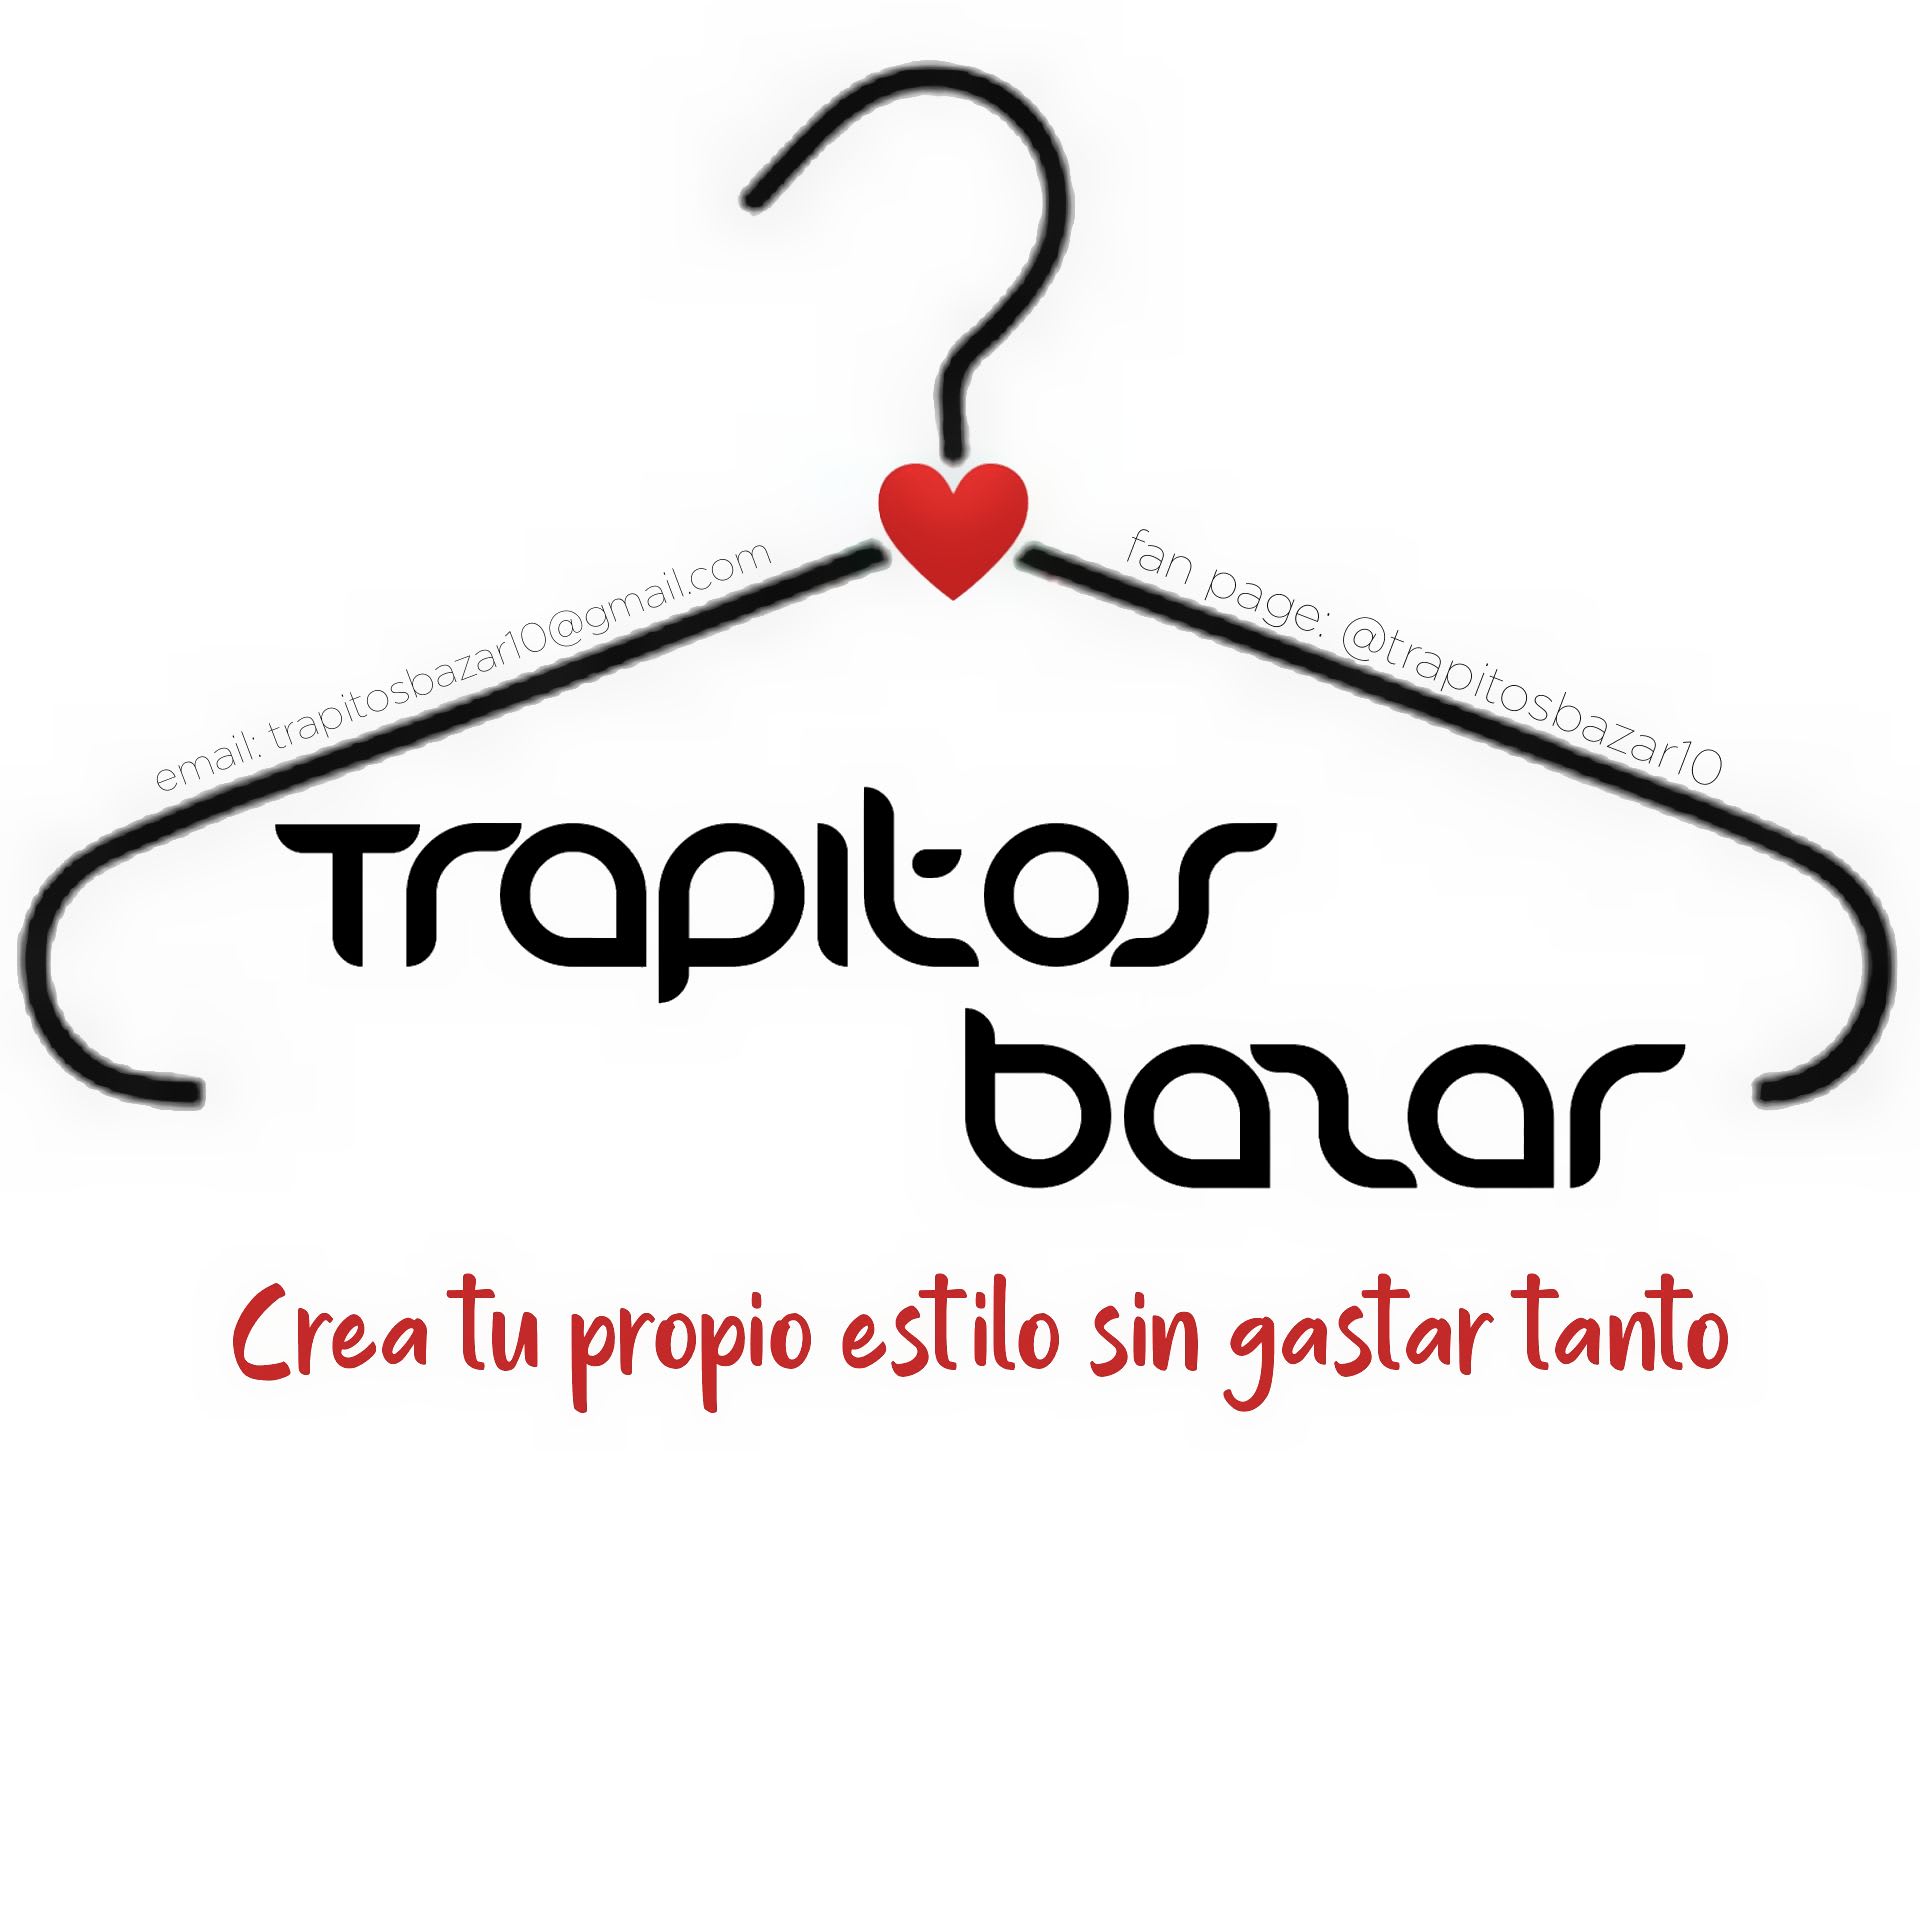 Trapitos Bazar